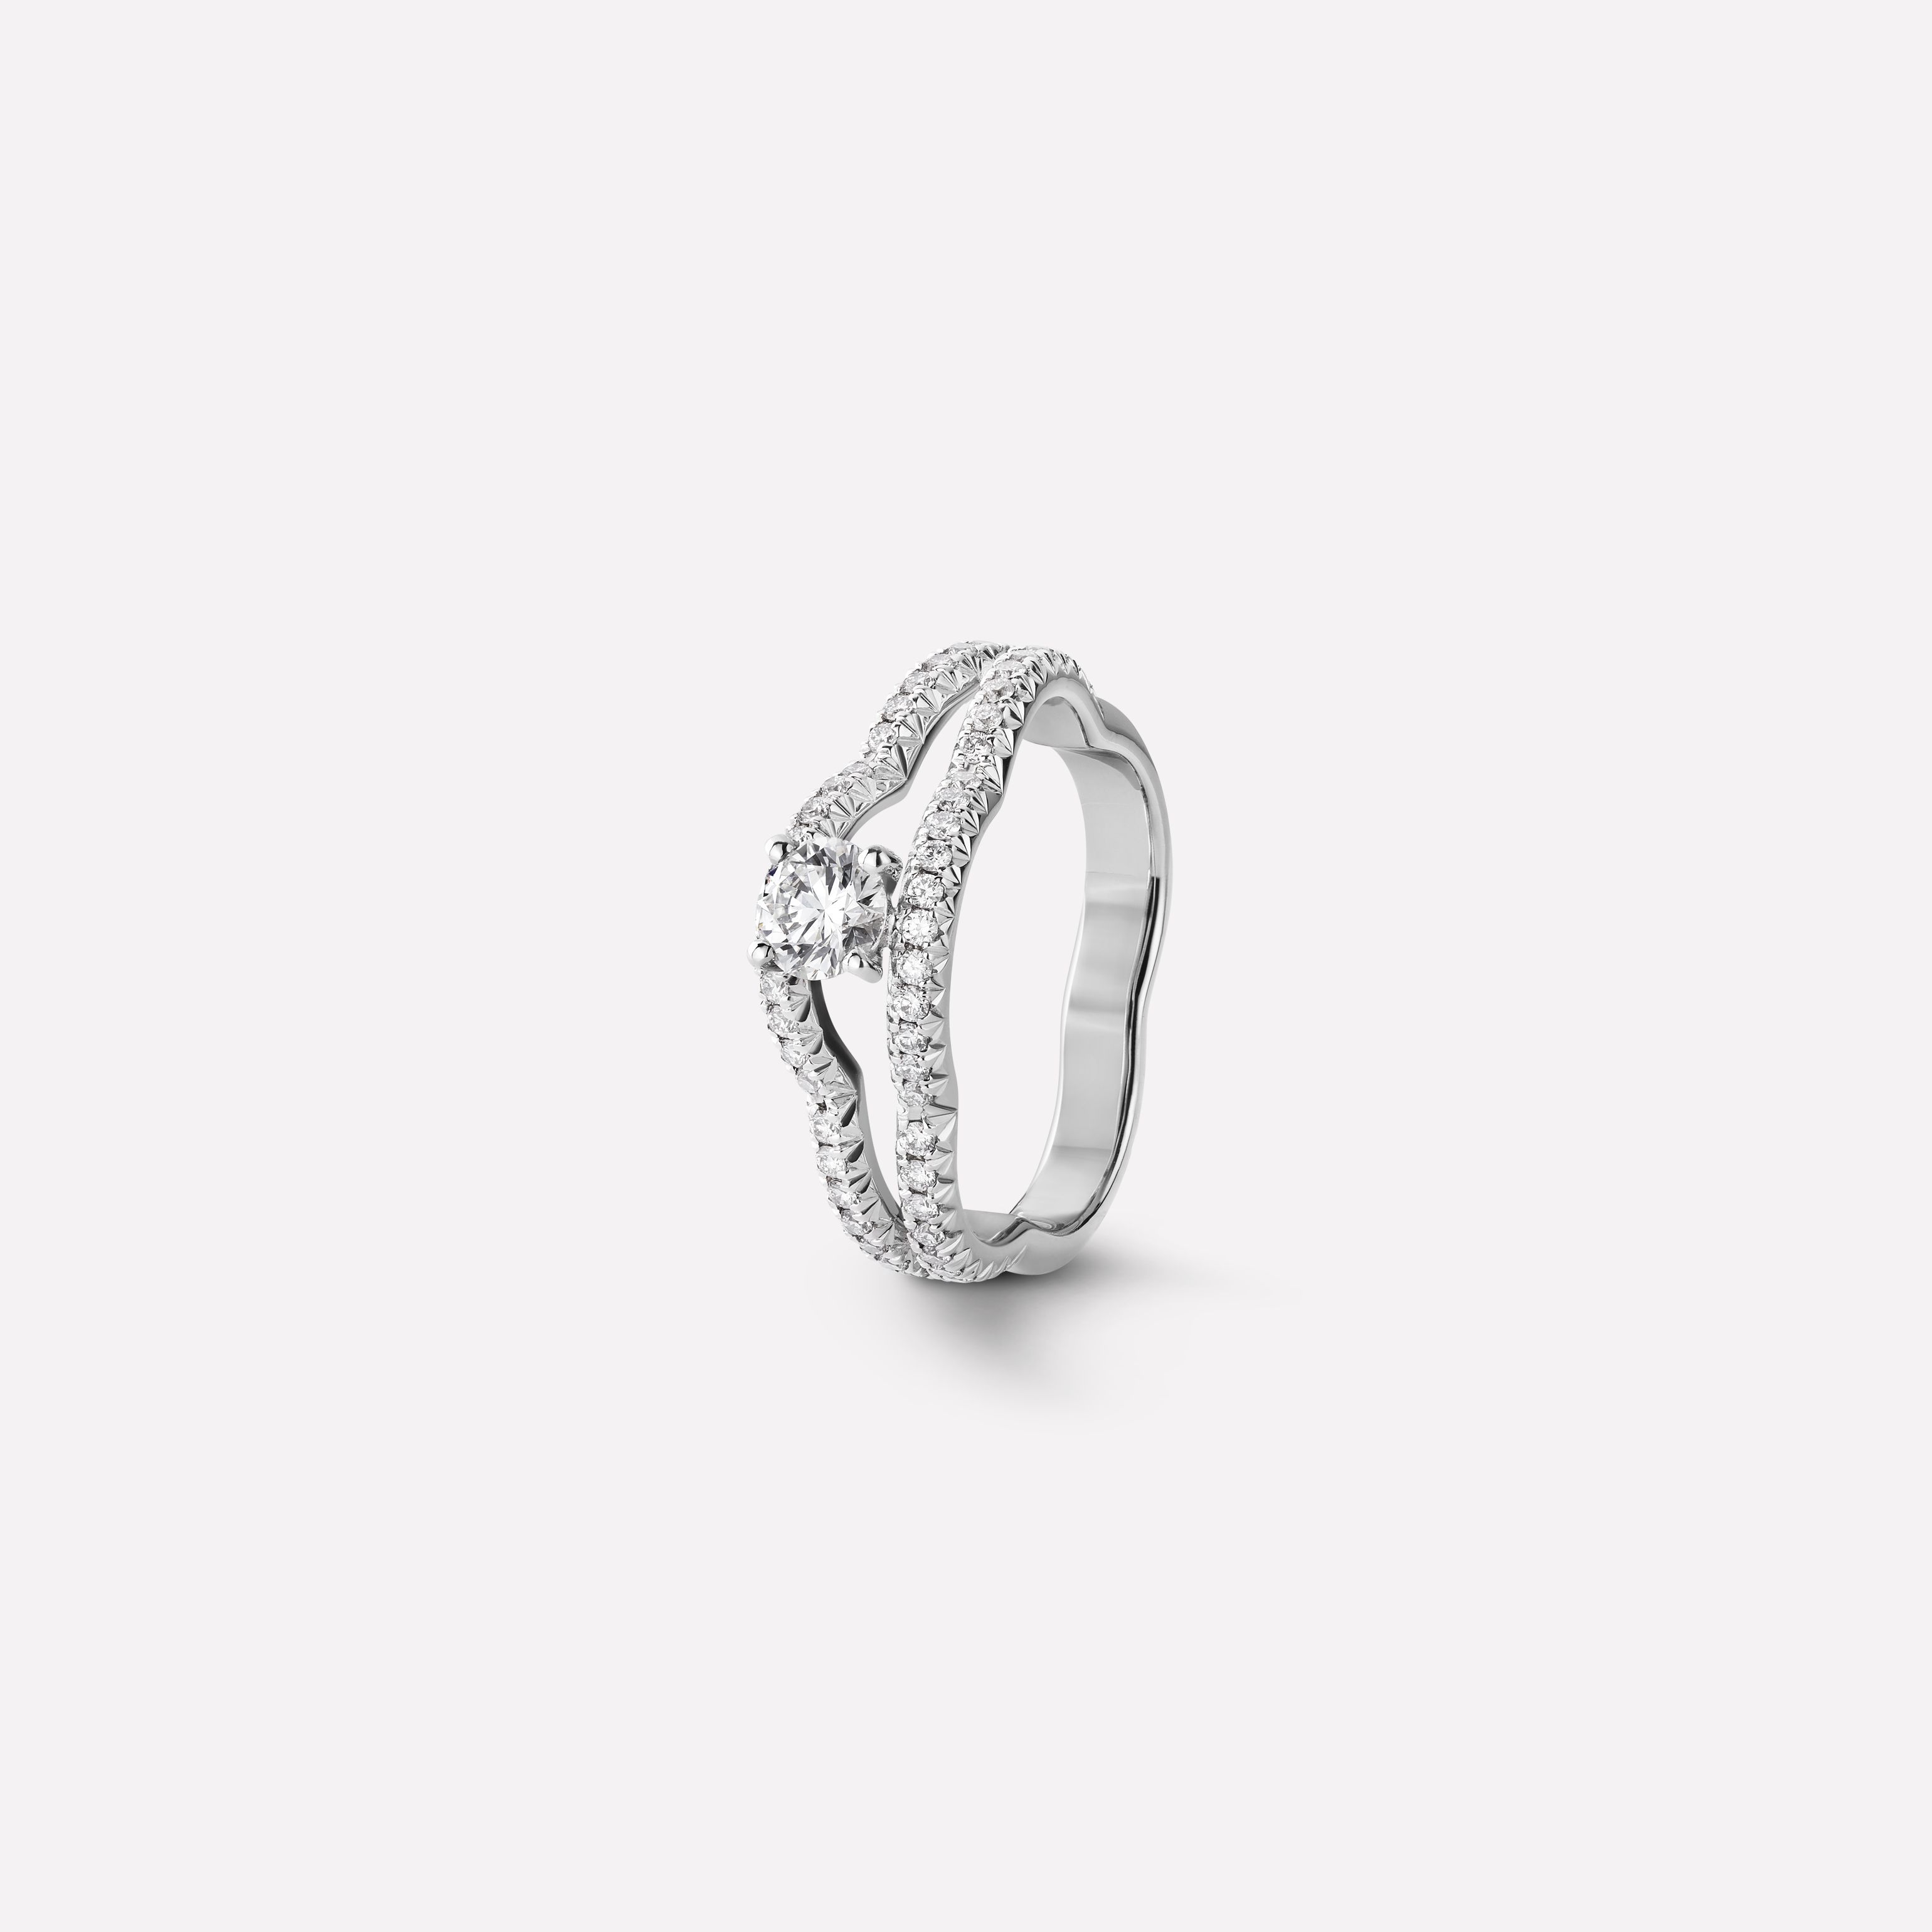 CAMÉLIA系列戒指 山茶花轮廓造型，白18K金，镶嵌钻石与中央主钻